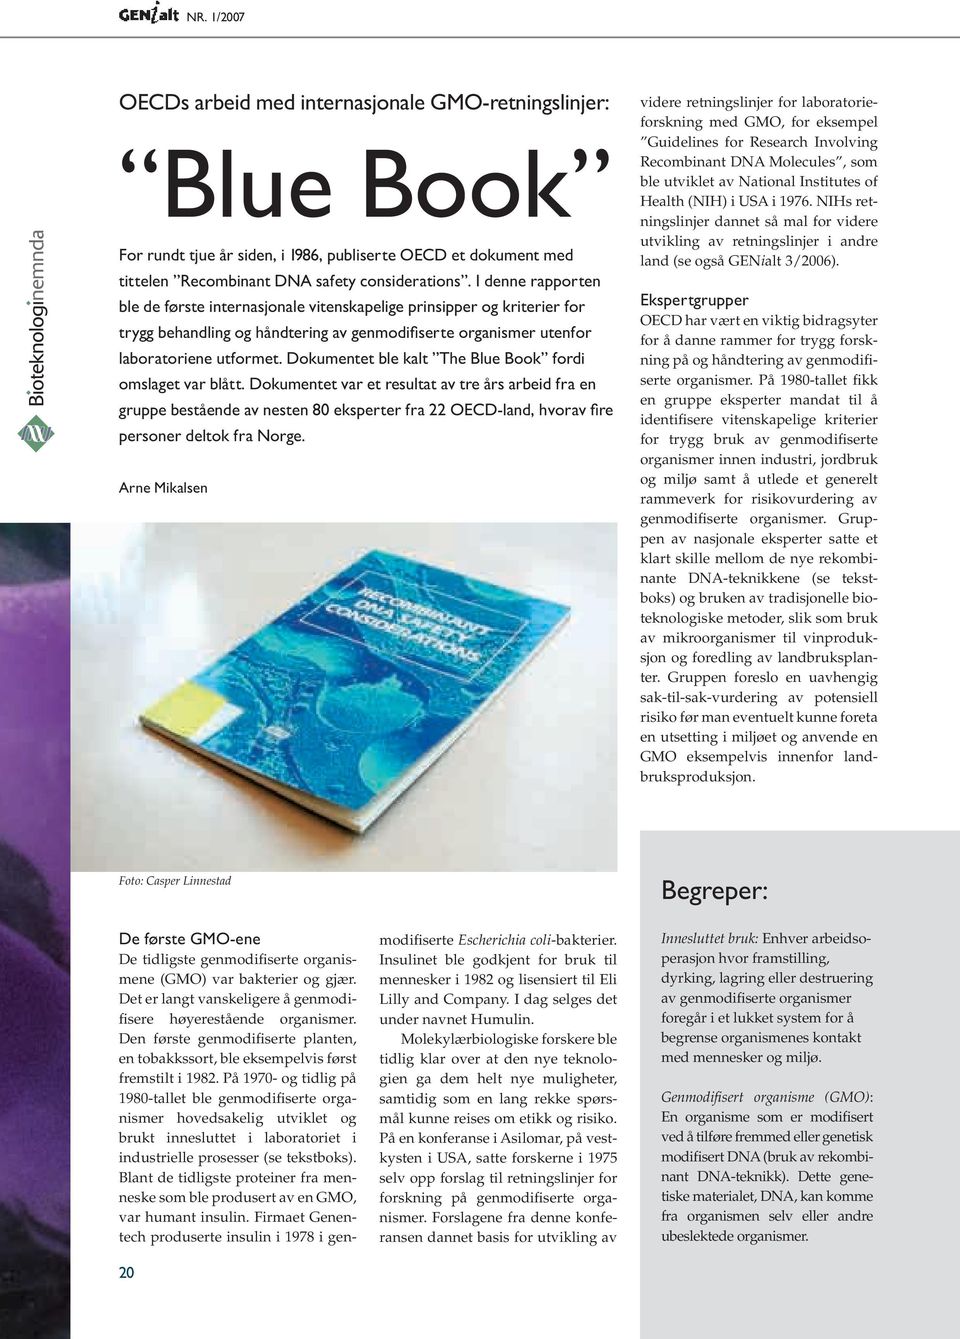 Dokumentet ble kalt The Blue Book fordi omslaget var blått.